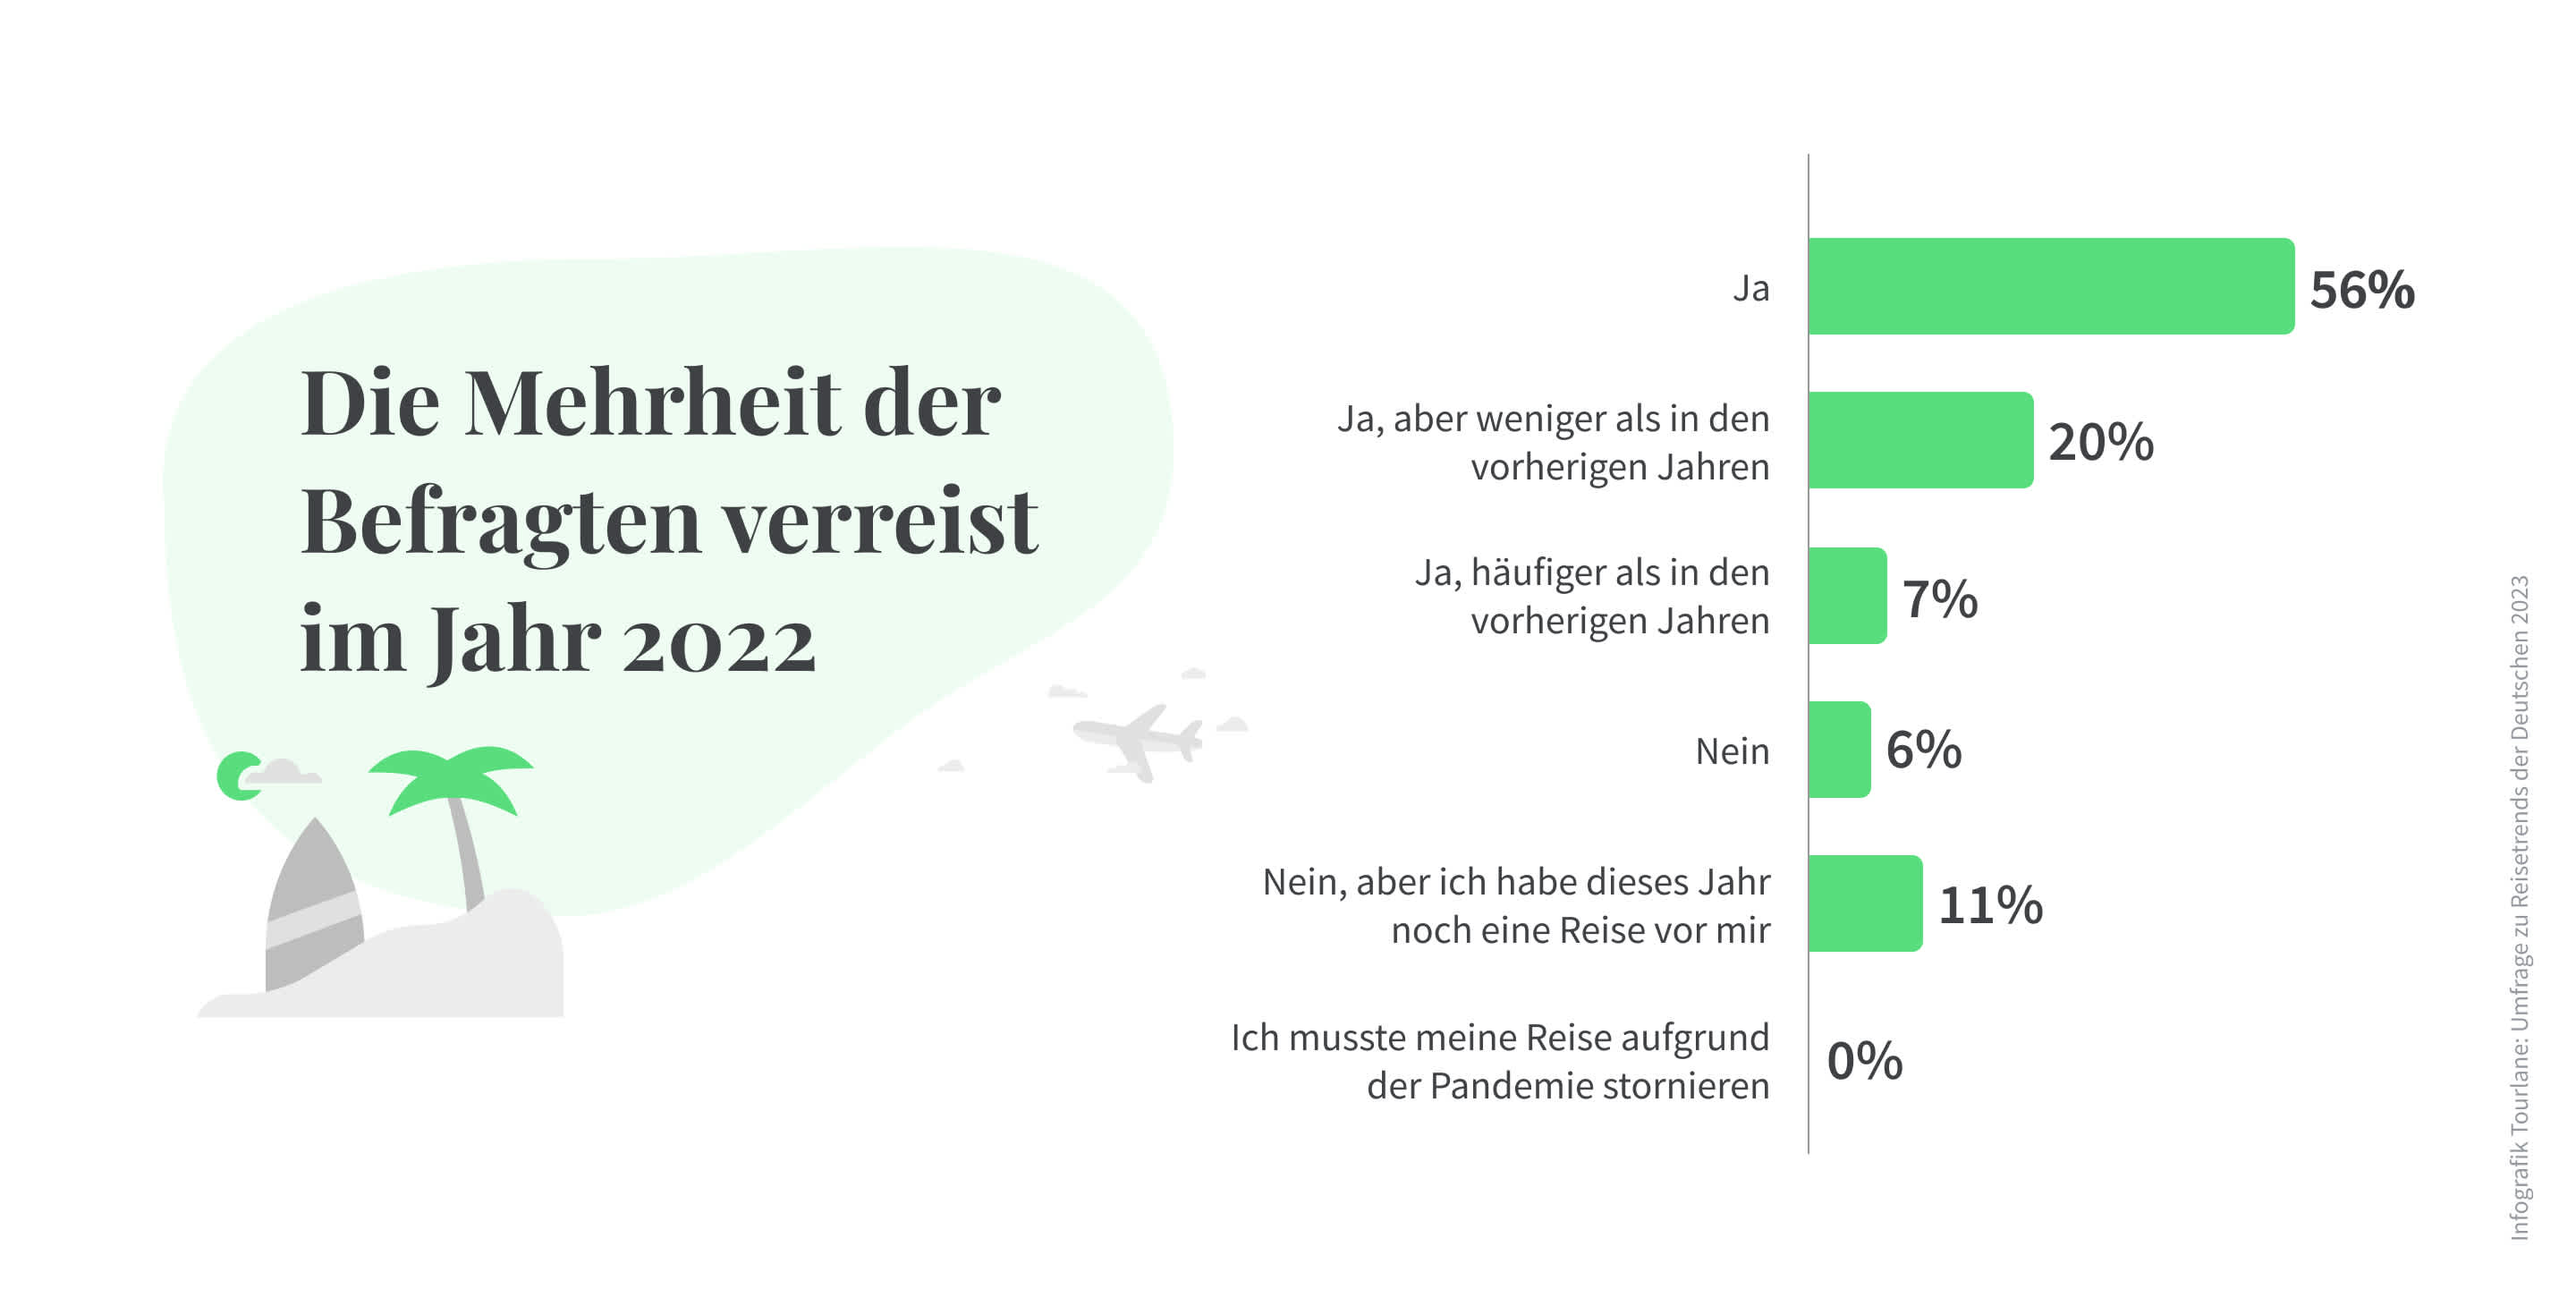 Die Deutschen Reisen 2022 wieder mehr